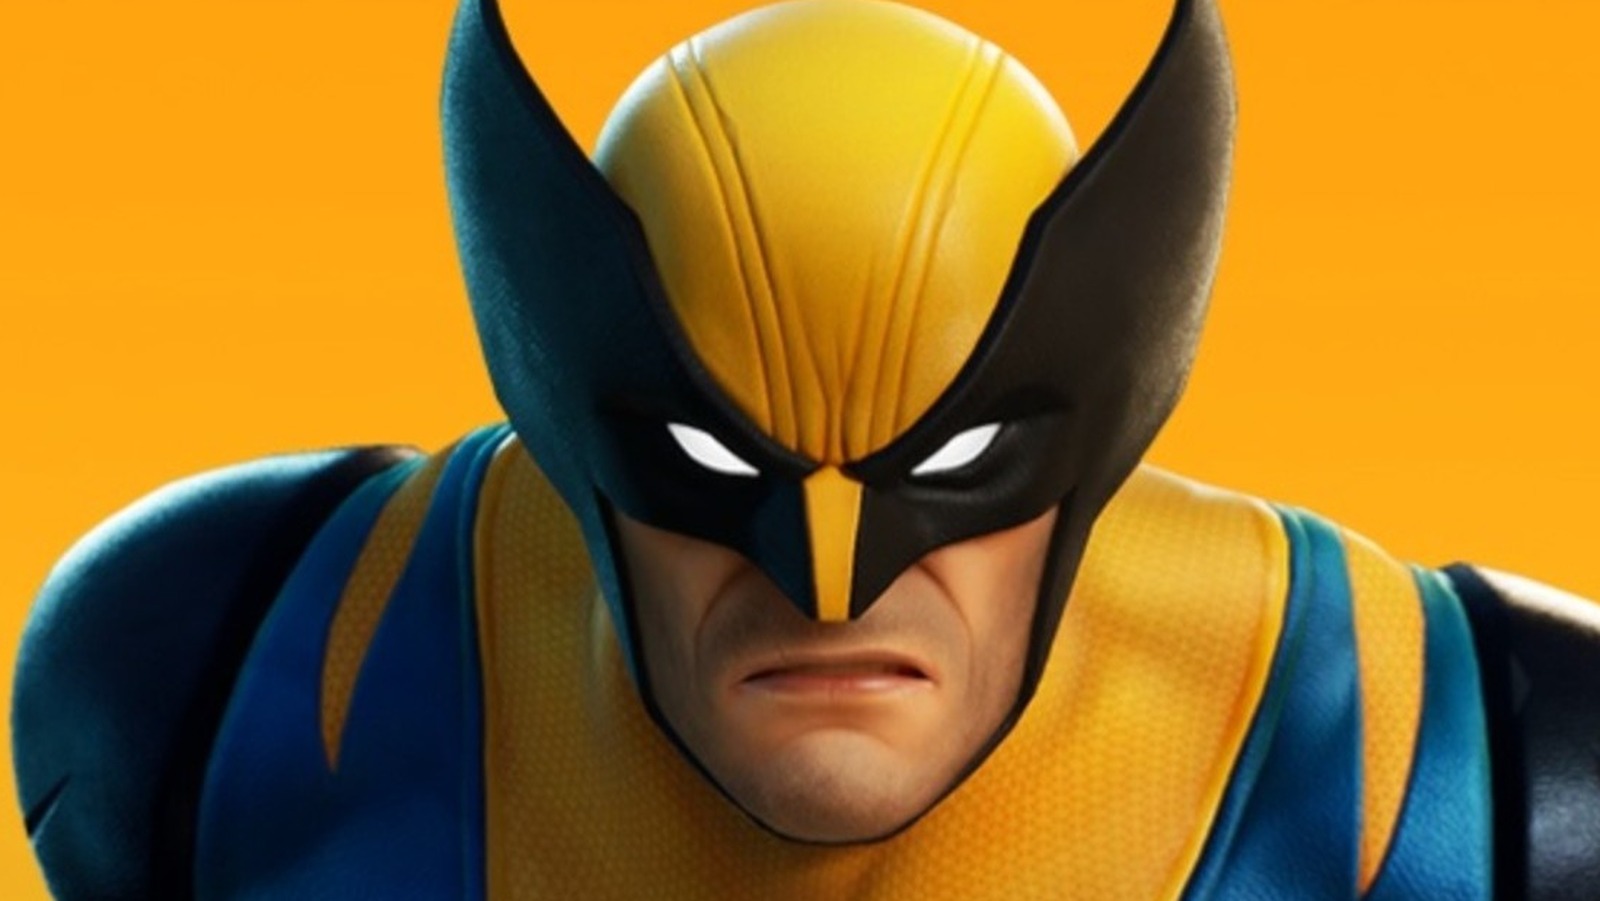 Marvel's Spider-Man 2 and Marvel's Wolverine revealed – PlayStation.Blog